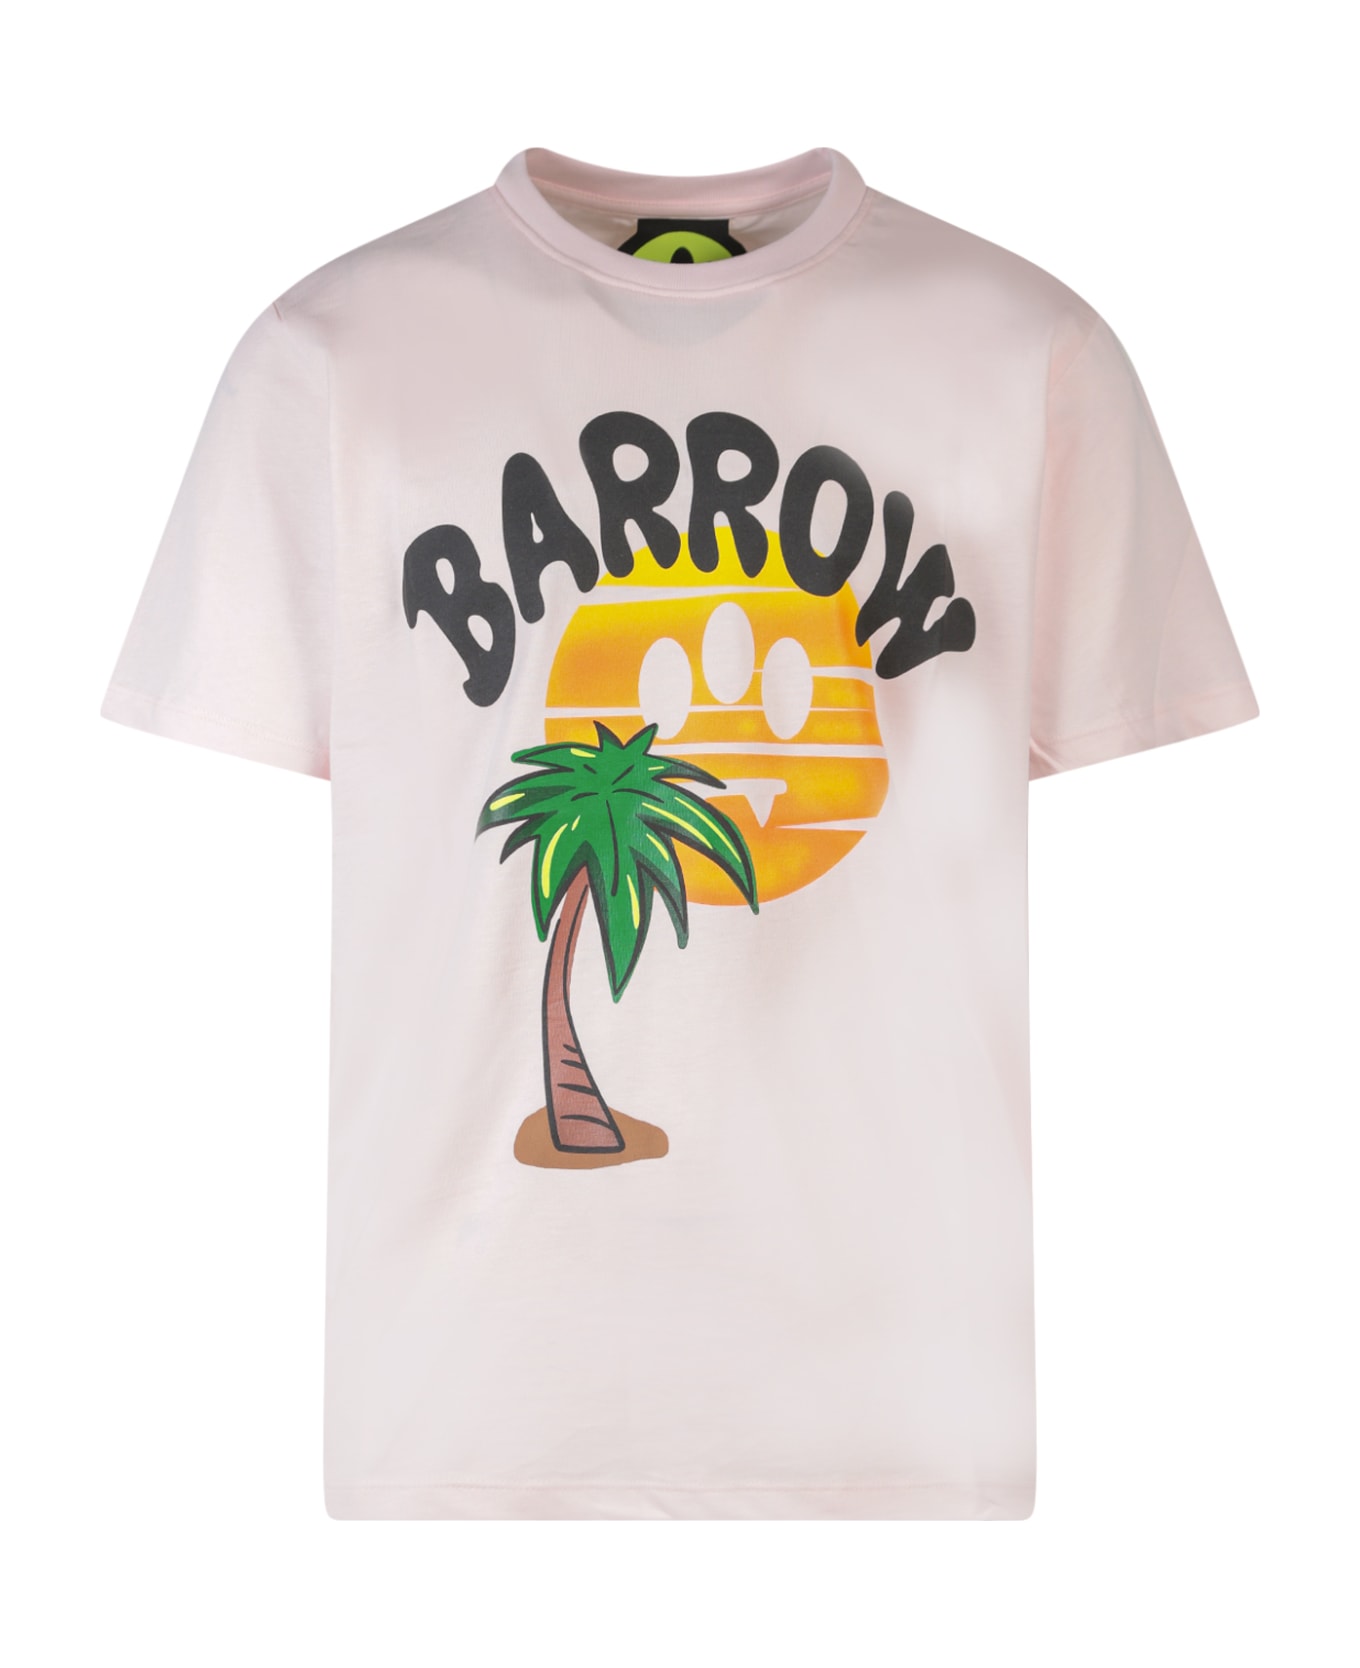 Barrow T-shirt - Light Pink シャツ